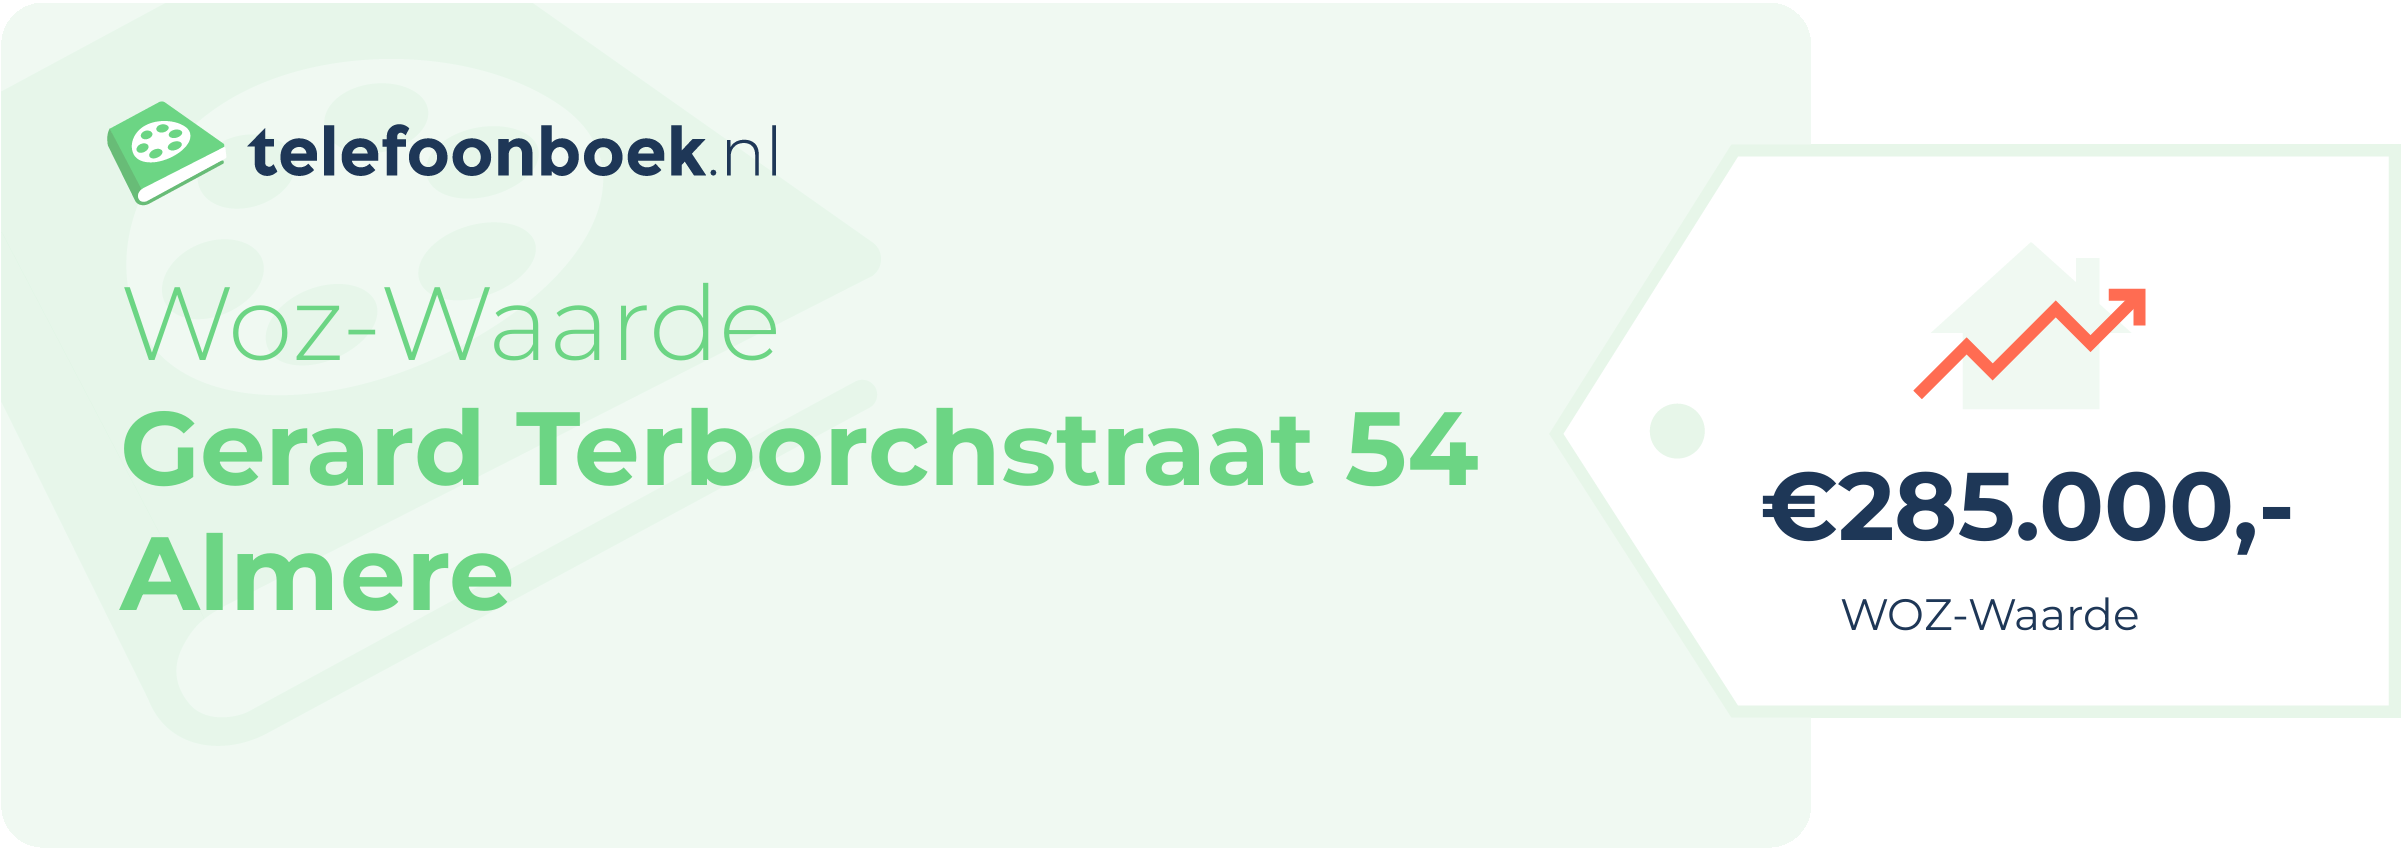 WOZ-waarde Gerard Terborchstraat 54 Almere